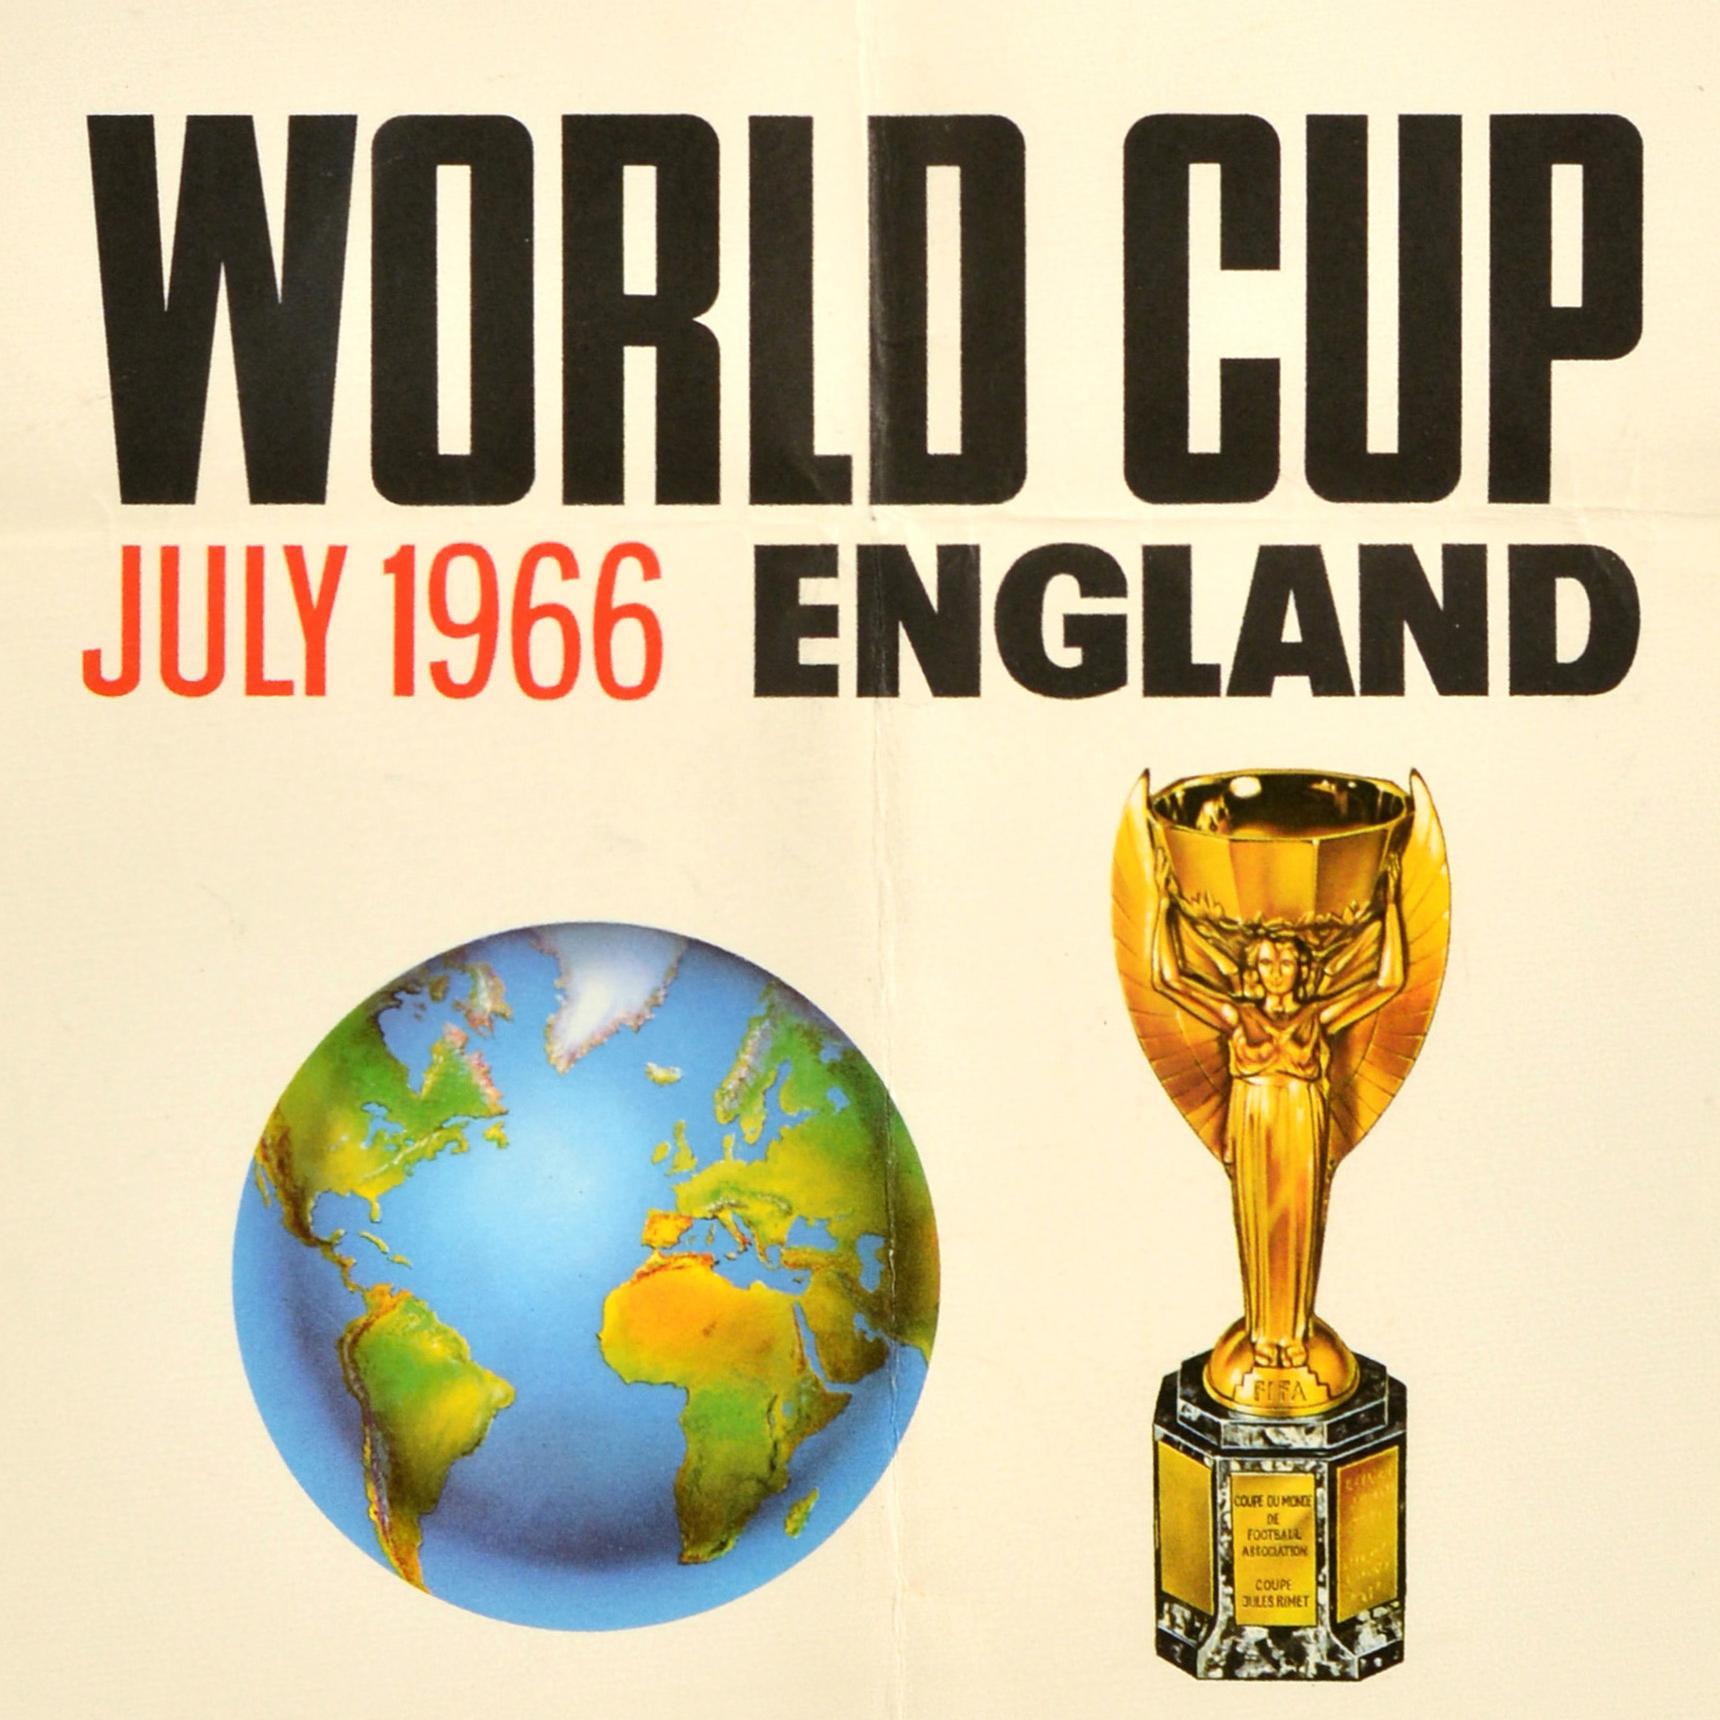 Affiche sportive originale de la Coupe du monde de 1966, championnat de football d'Angleterre FIFA - Print de Unknown